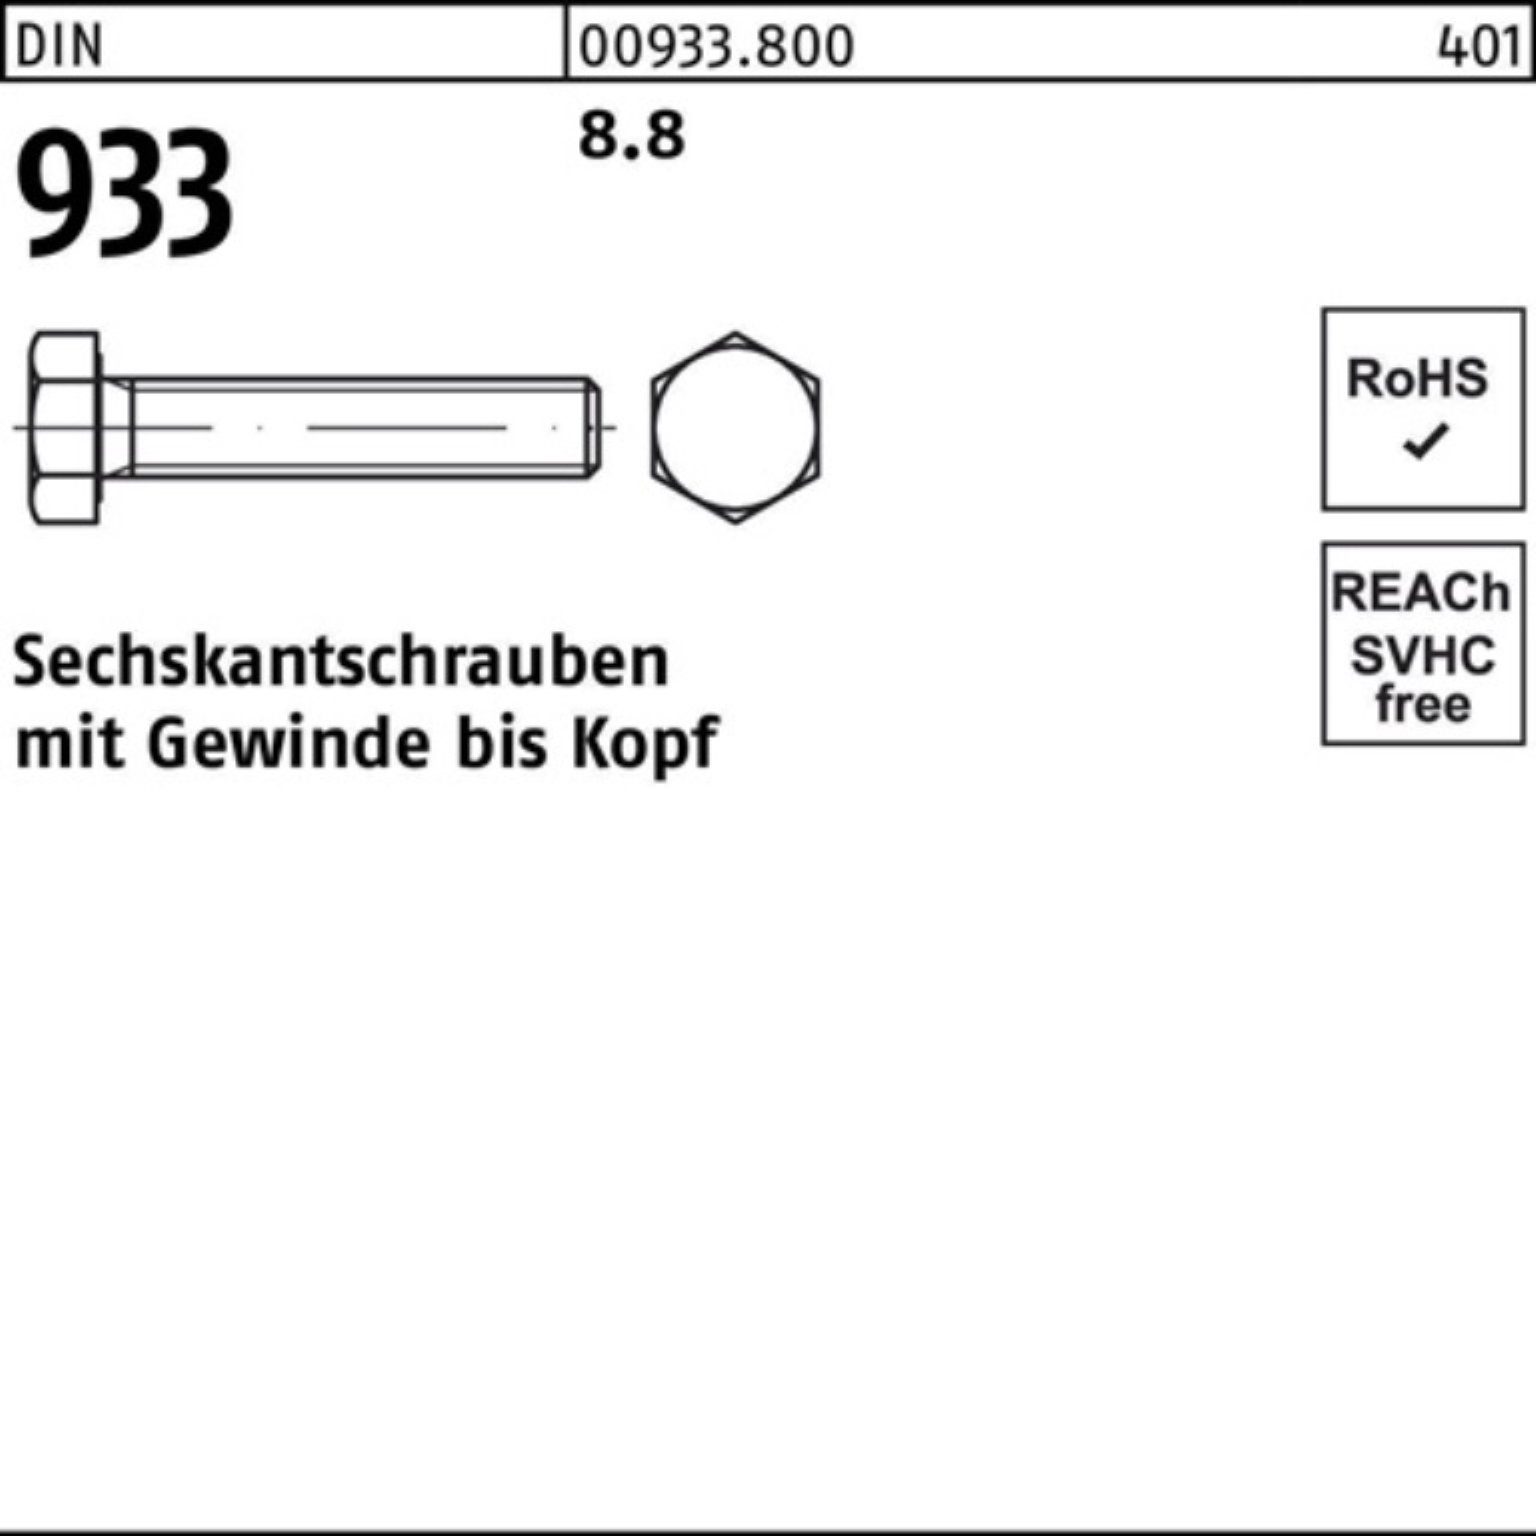 Stück 933 200 M8x Sechskantschraube DIN VG DIN 933 80 Sechskantschraube 8.8 Pack Reyher 200er